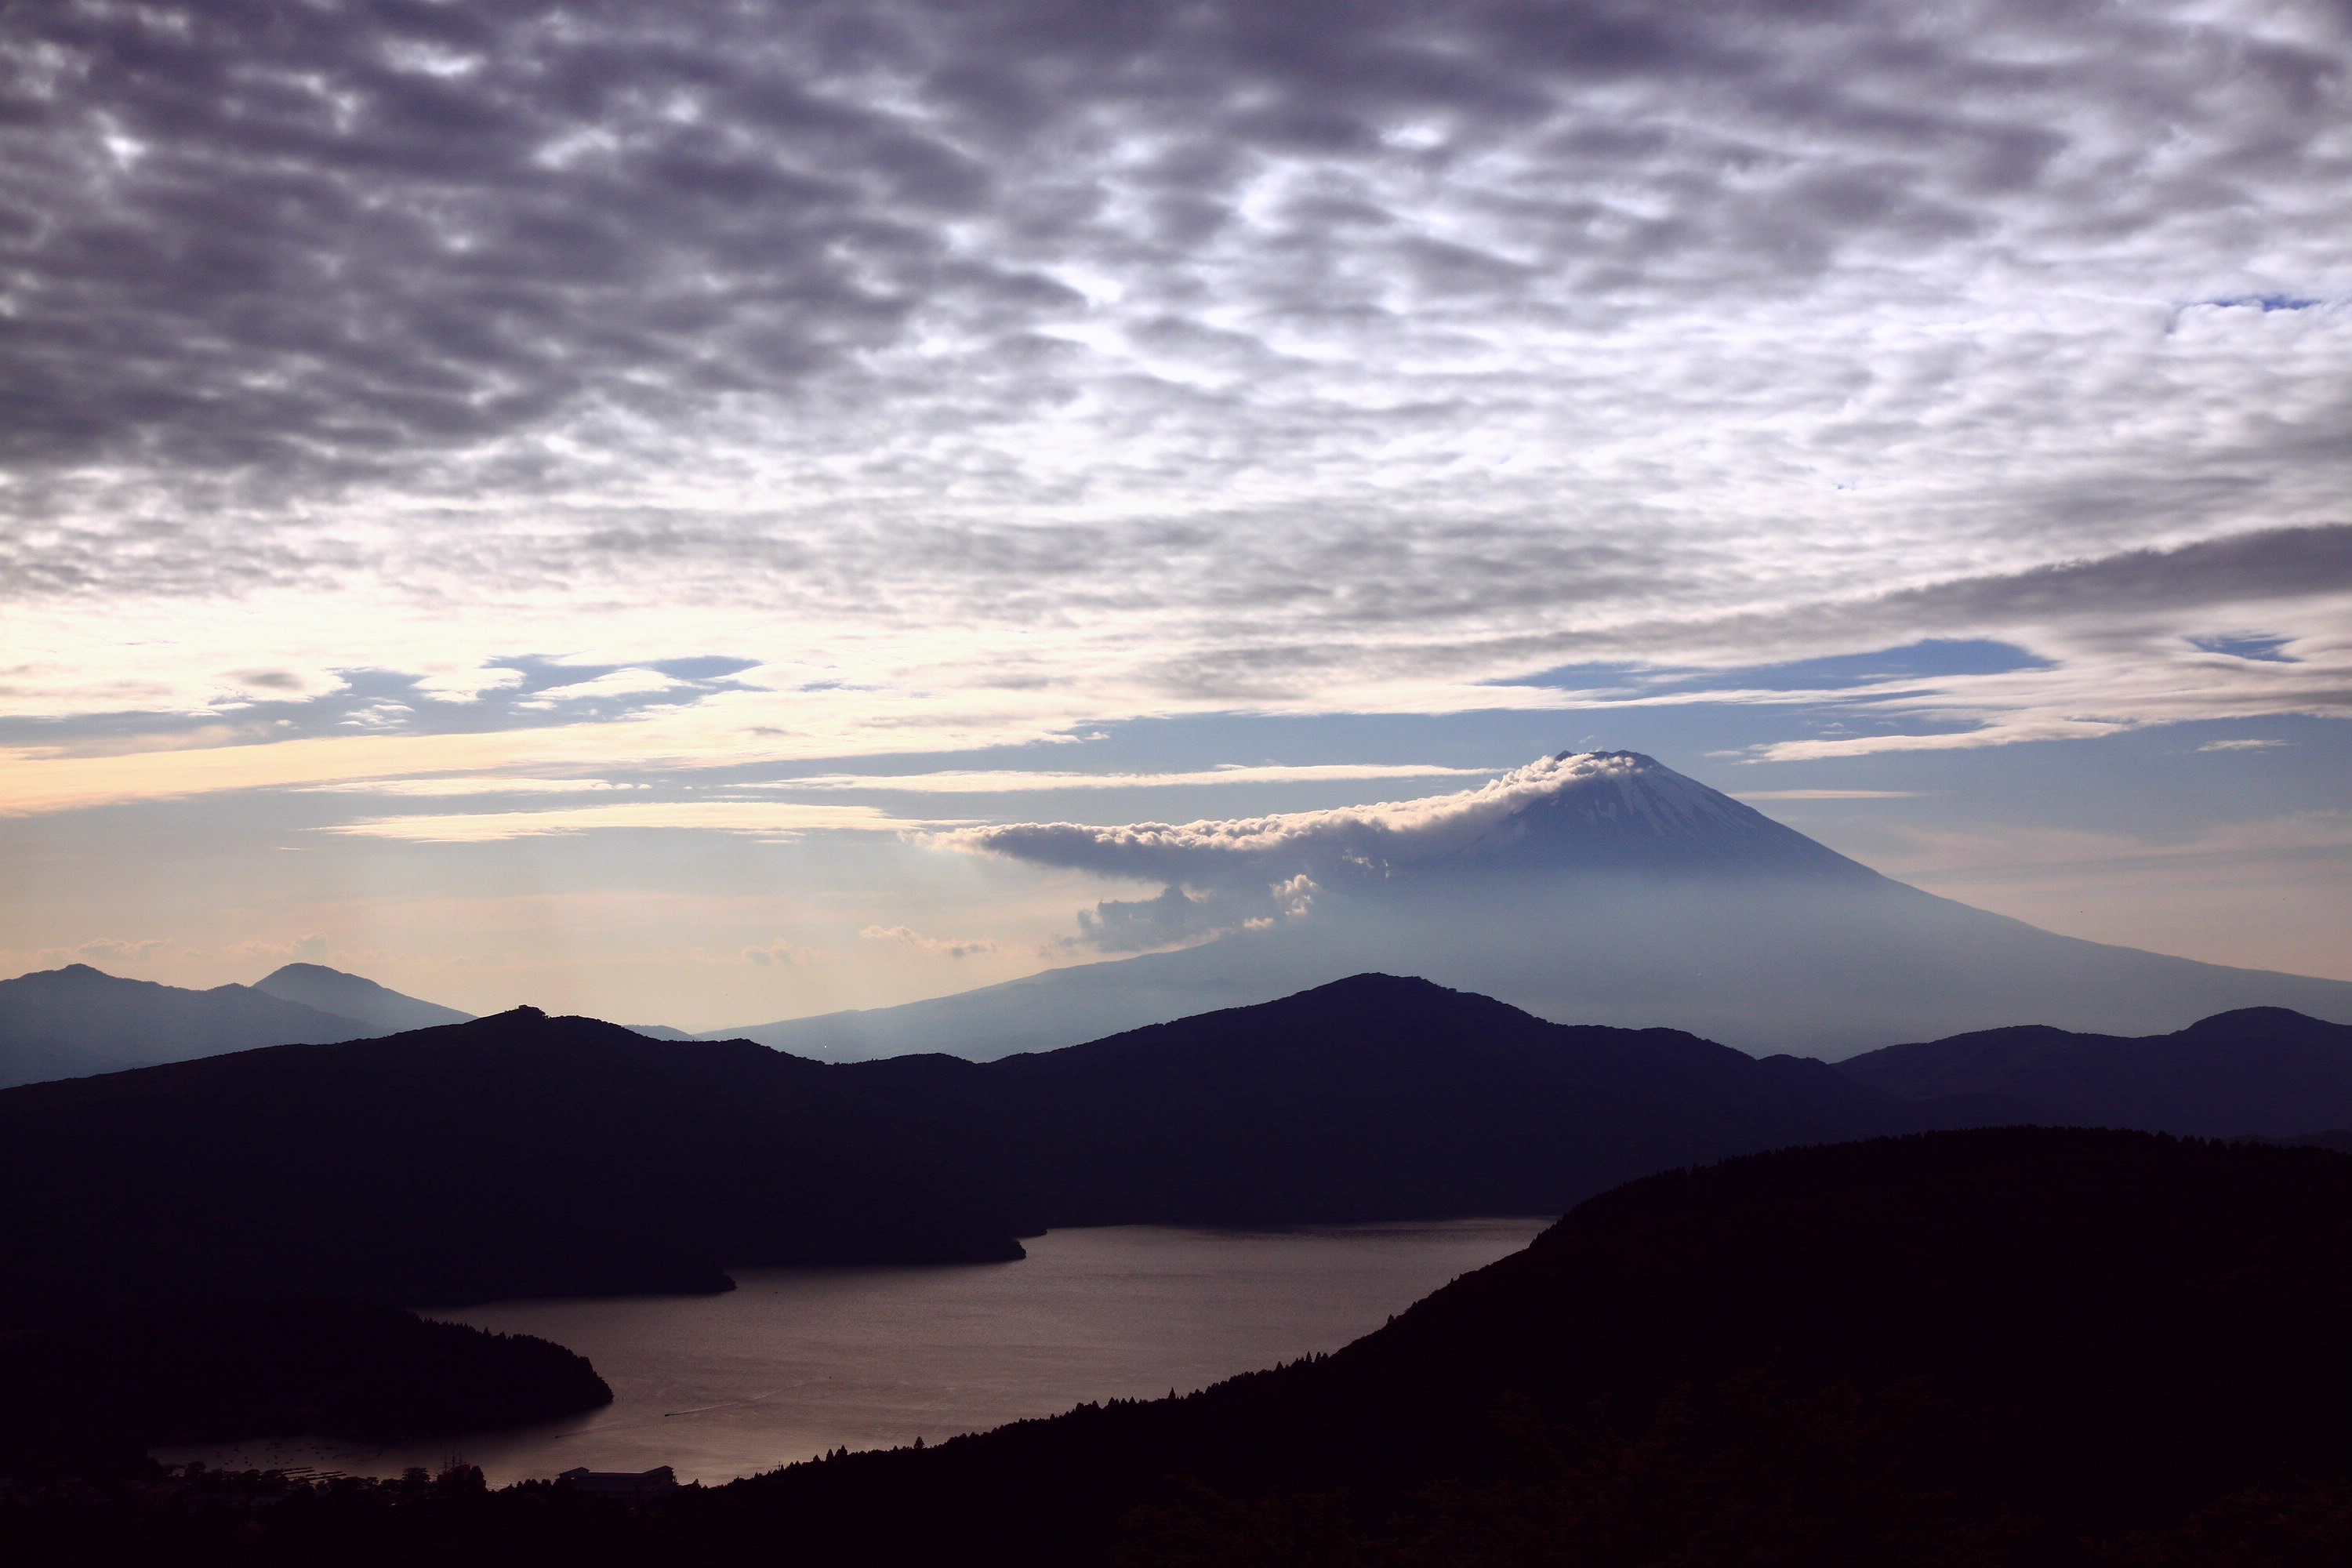 Fond d'ecran Volcan sous les nuages